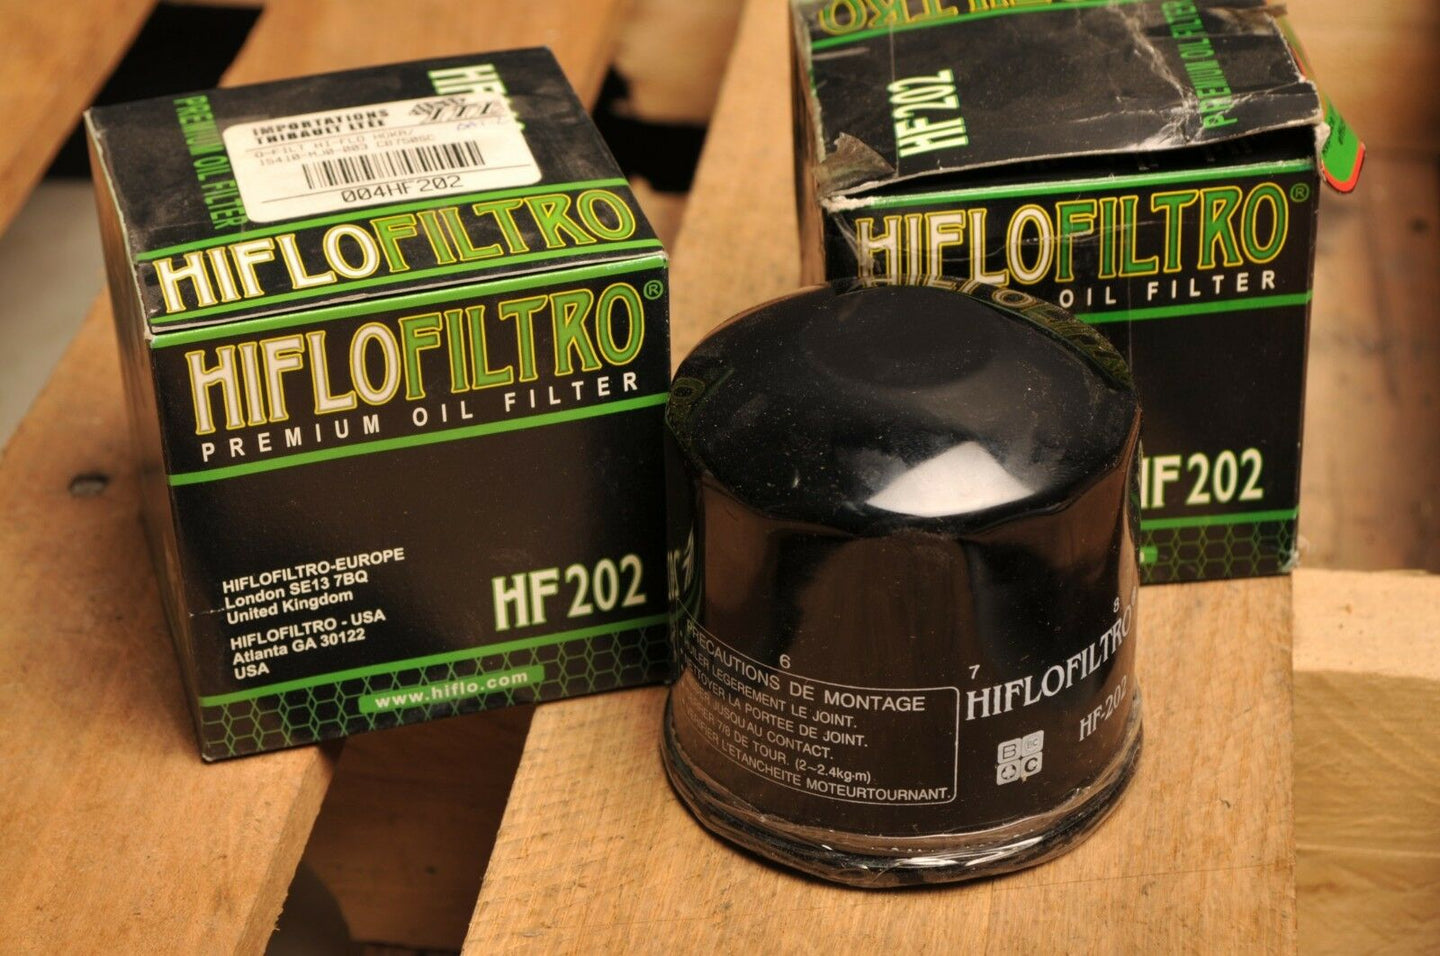 HIFLO FILTRO OIL FILTER FILTERS x2 - HF202 - HONDA VF400 VF500 VT750 VT700 VF700